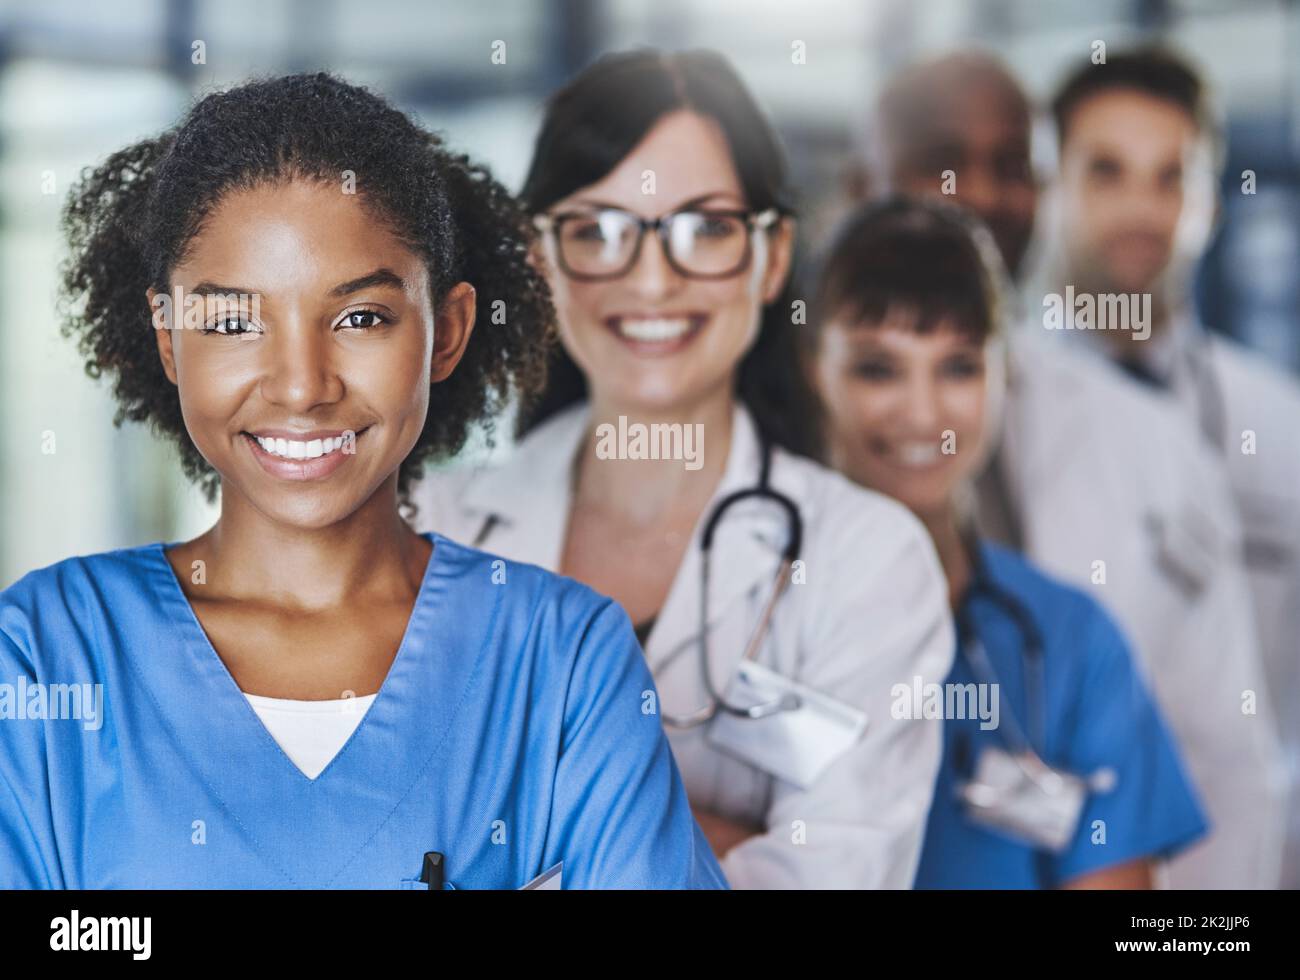 Il team che salva vite umane. Ritratto di un team di medici diversi in piedi insieme in un ospedale. Foto Stock